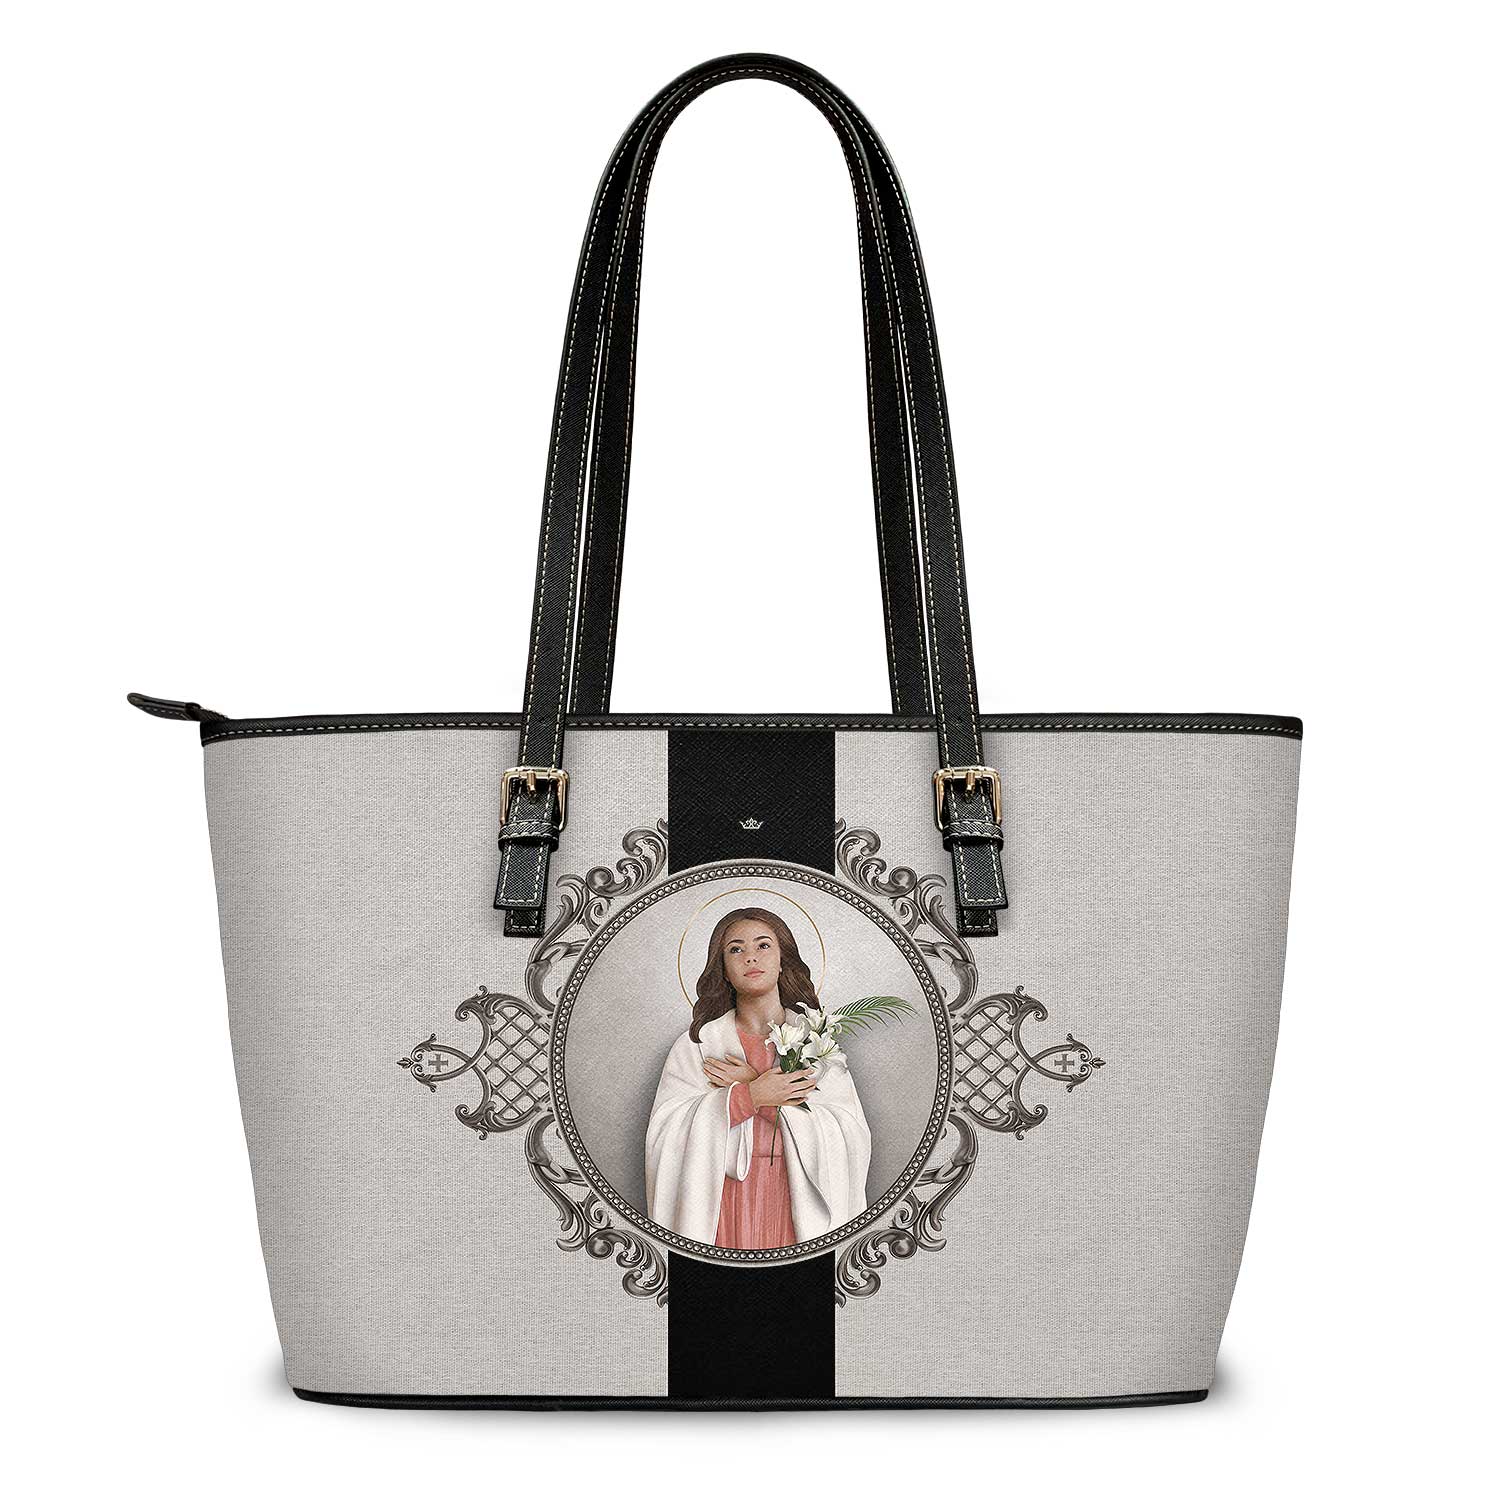 St. Maria Goretti Medallion Tote Bag (Sandstone) - VENXARA®